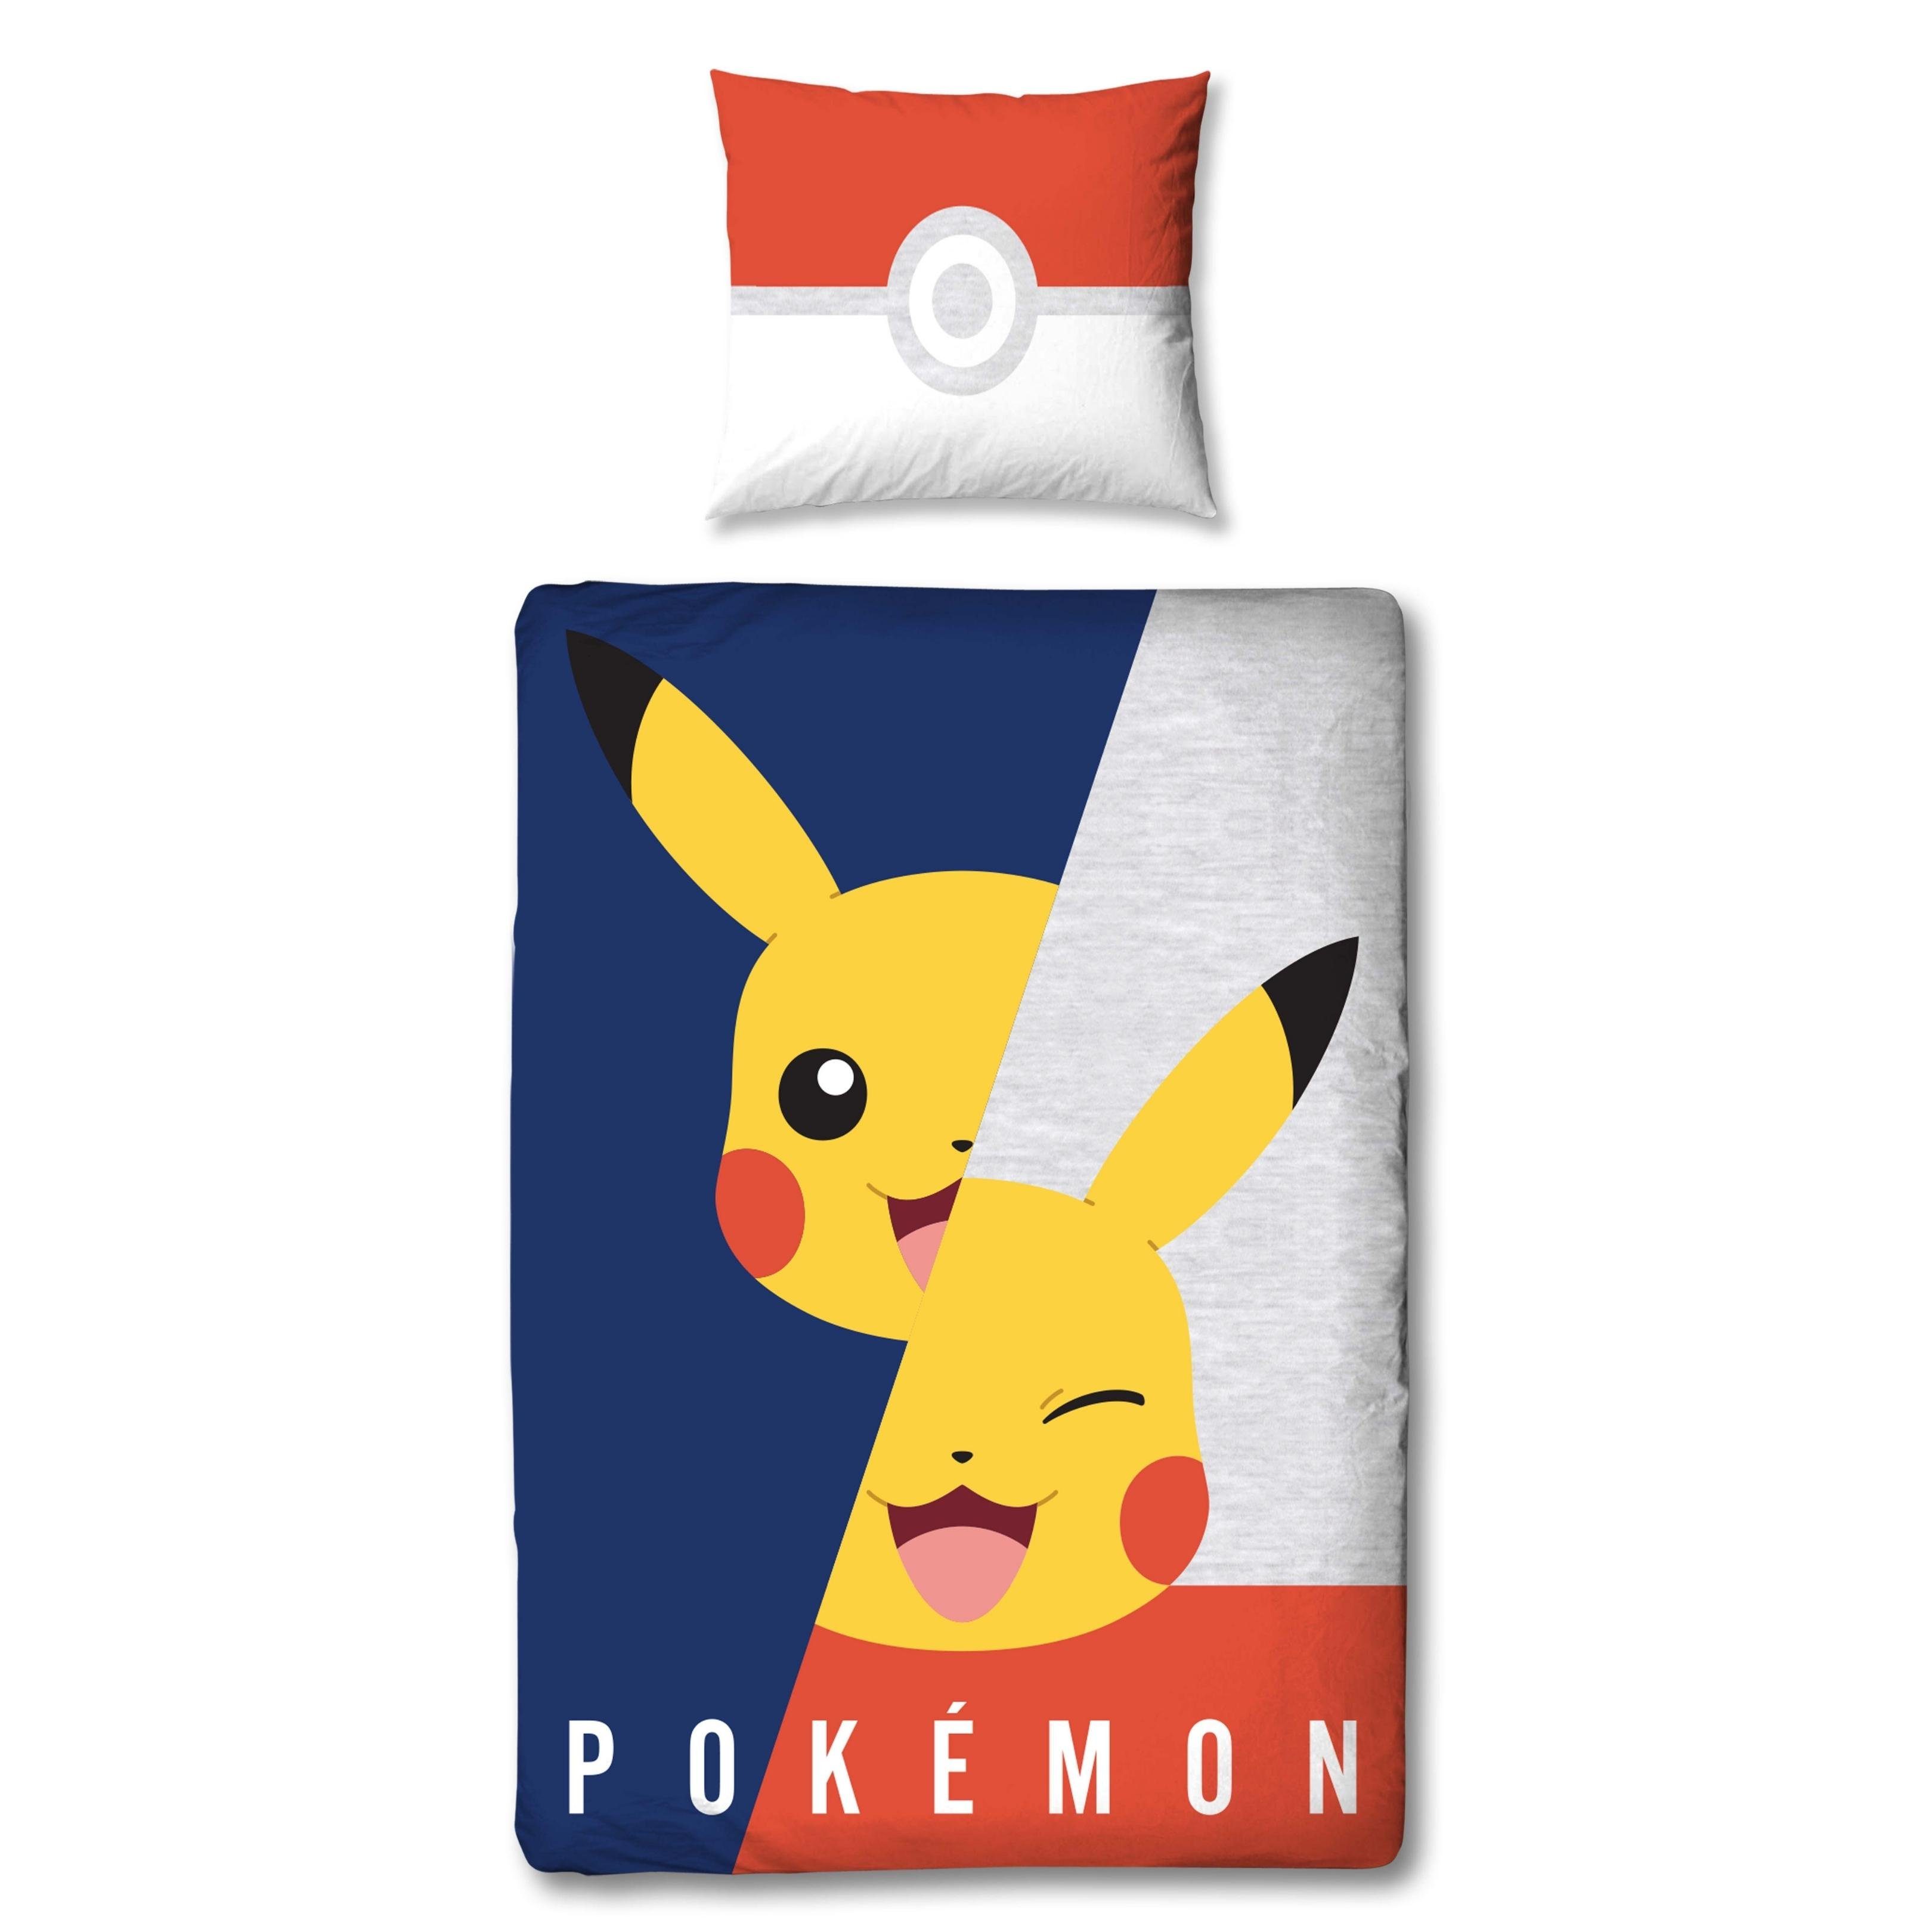 Bettwäsche Pokémon Pikachu 135x200 + 80x80 cm, 100 % Baumwolle,  MTOnlinehandel, Renforcé, 2 teilig, Game / Gaming Bettwäsche für Kinder,  Teenager & Jugend